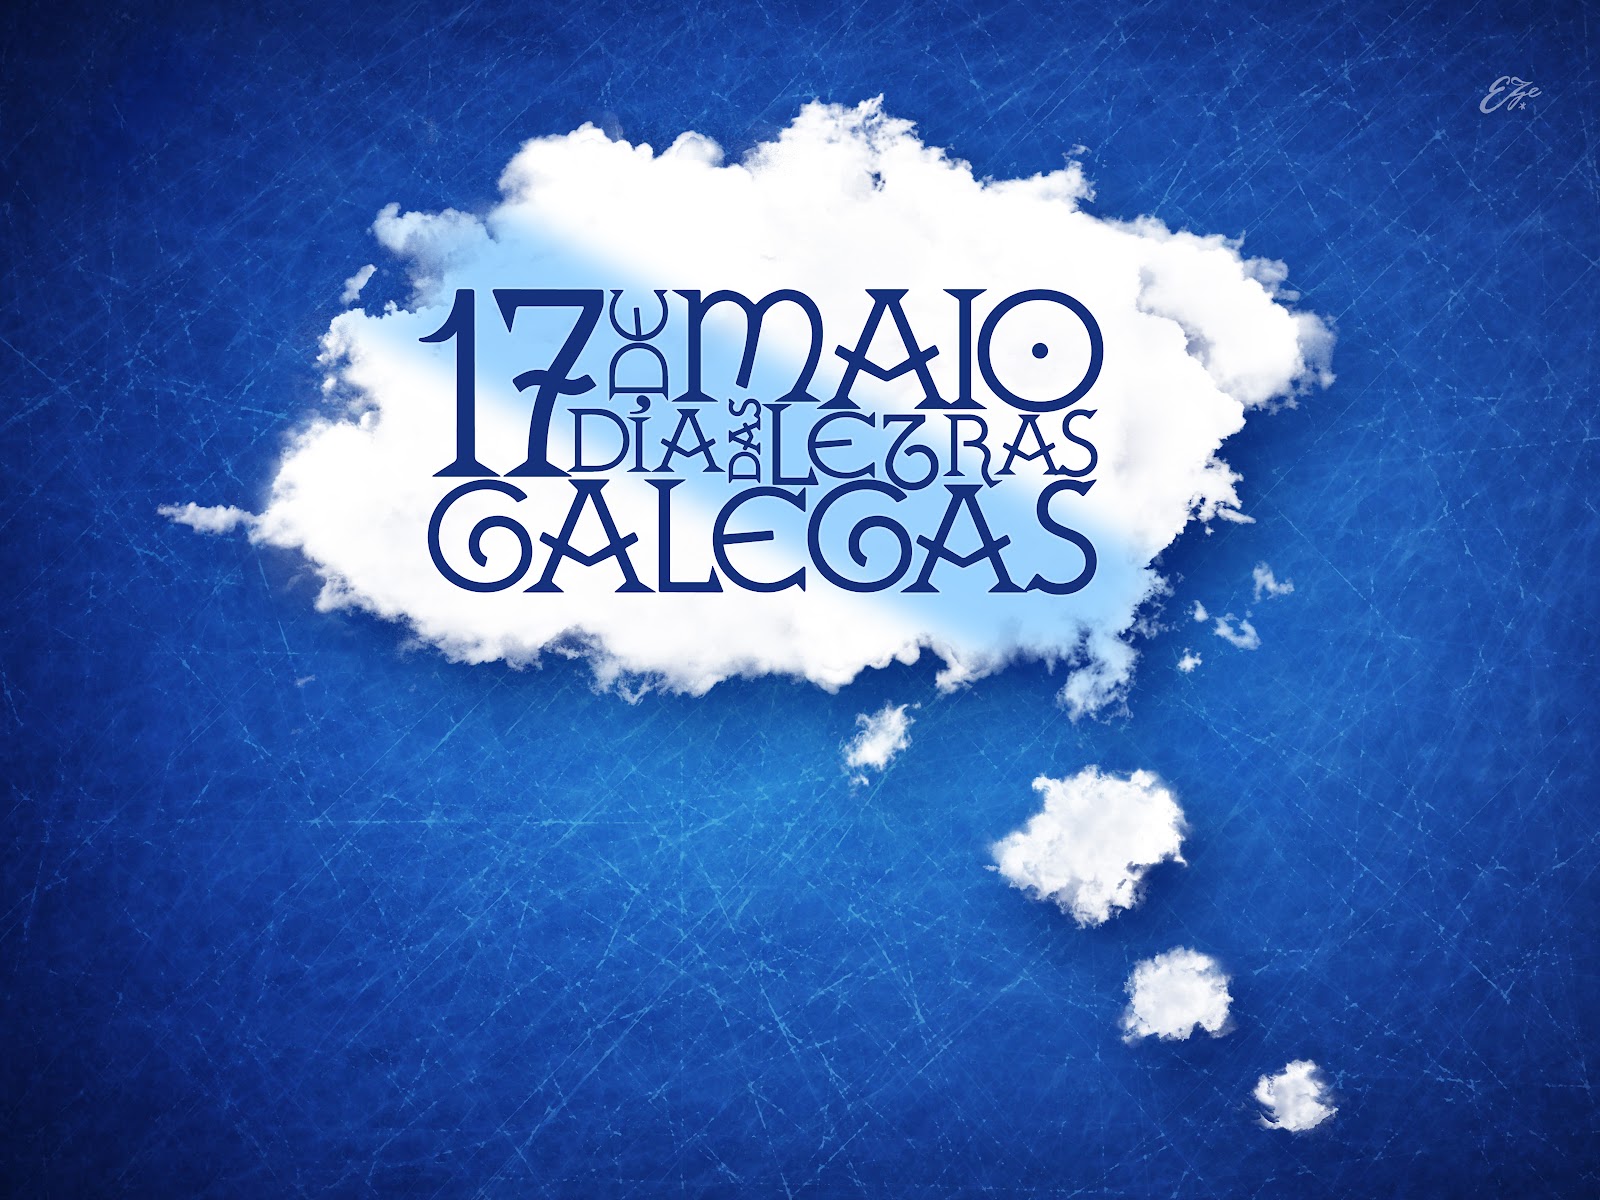 cúbico Tendencia Gigante Día das Letras Galegas - El Blog de Mariskito